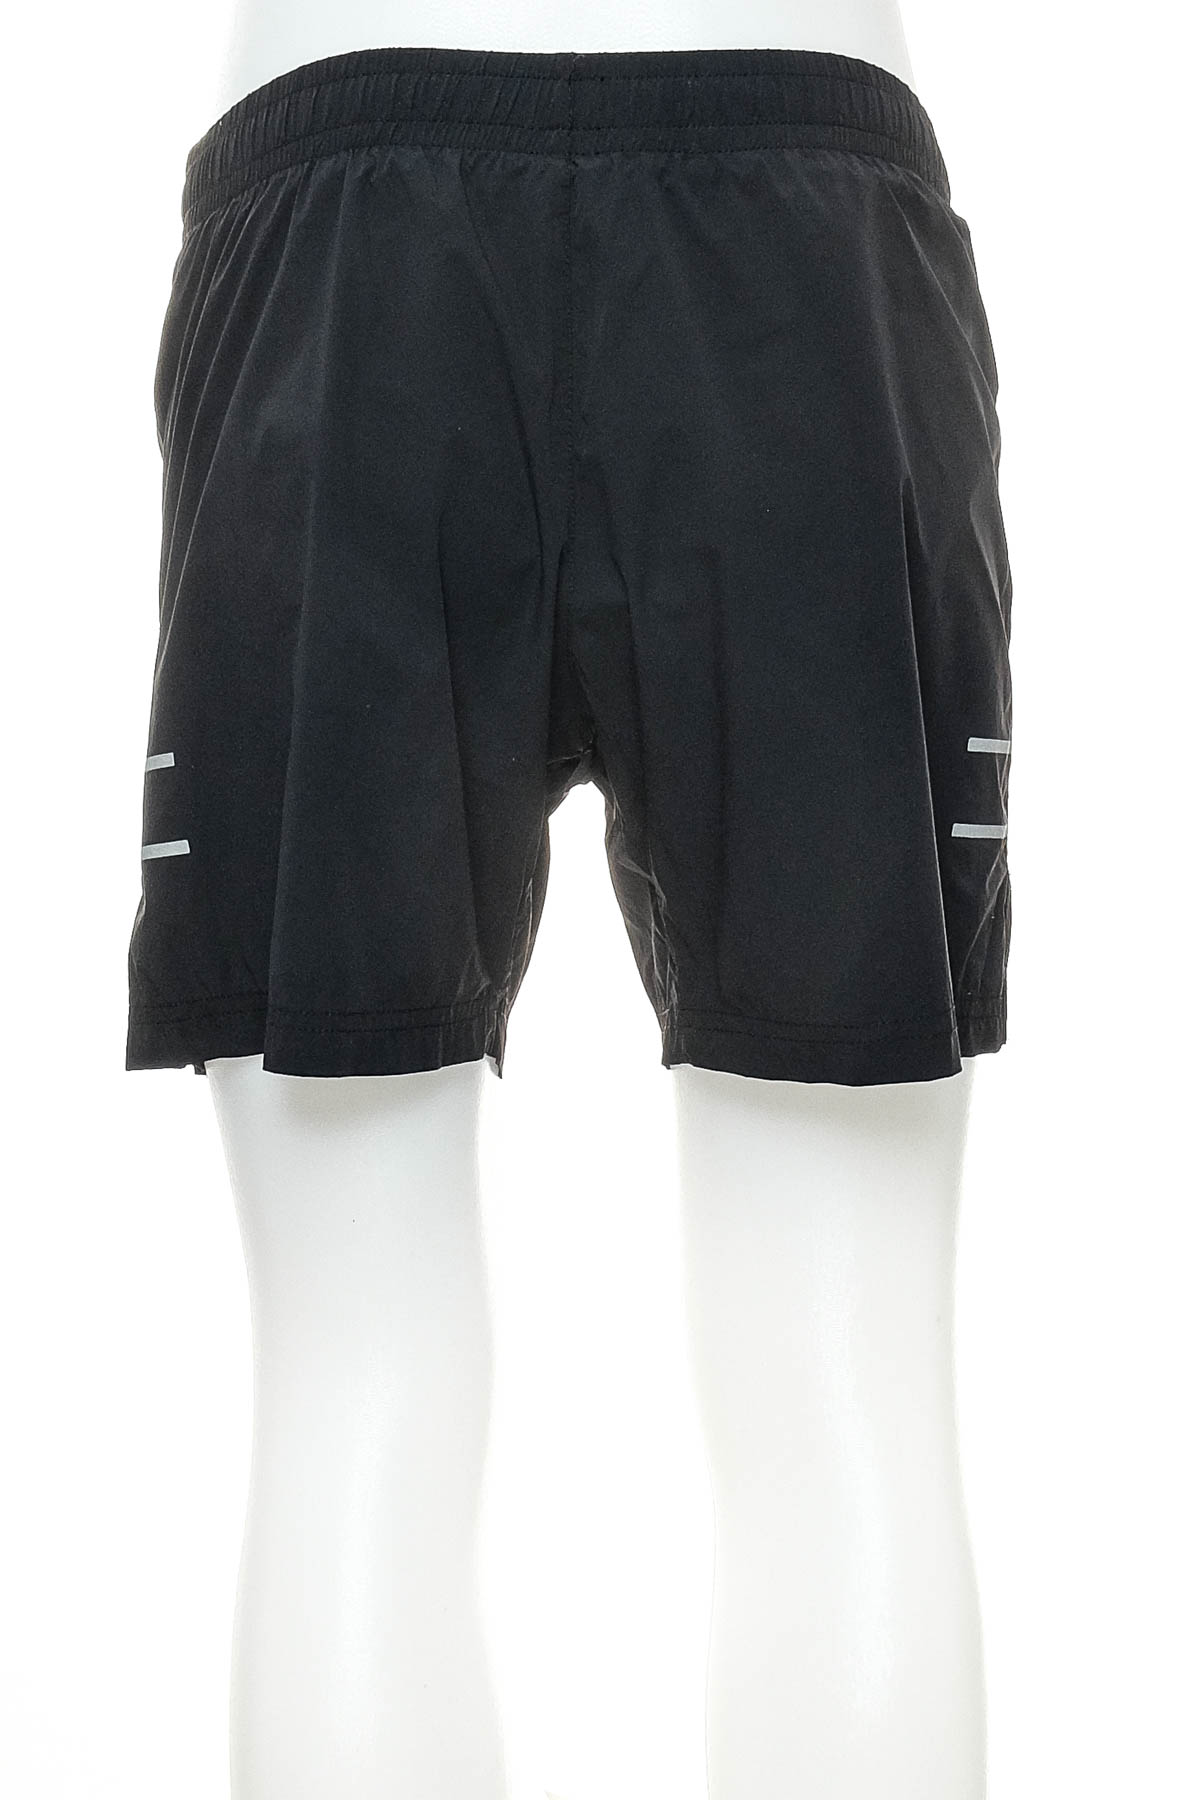 Men's shorts - Lyle & Scott - 1